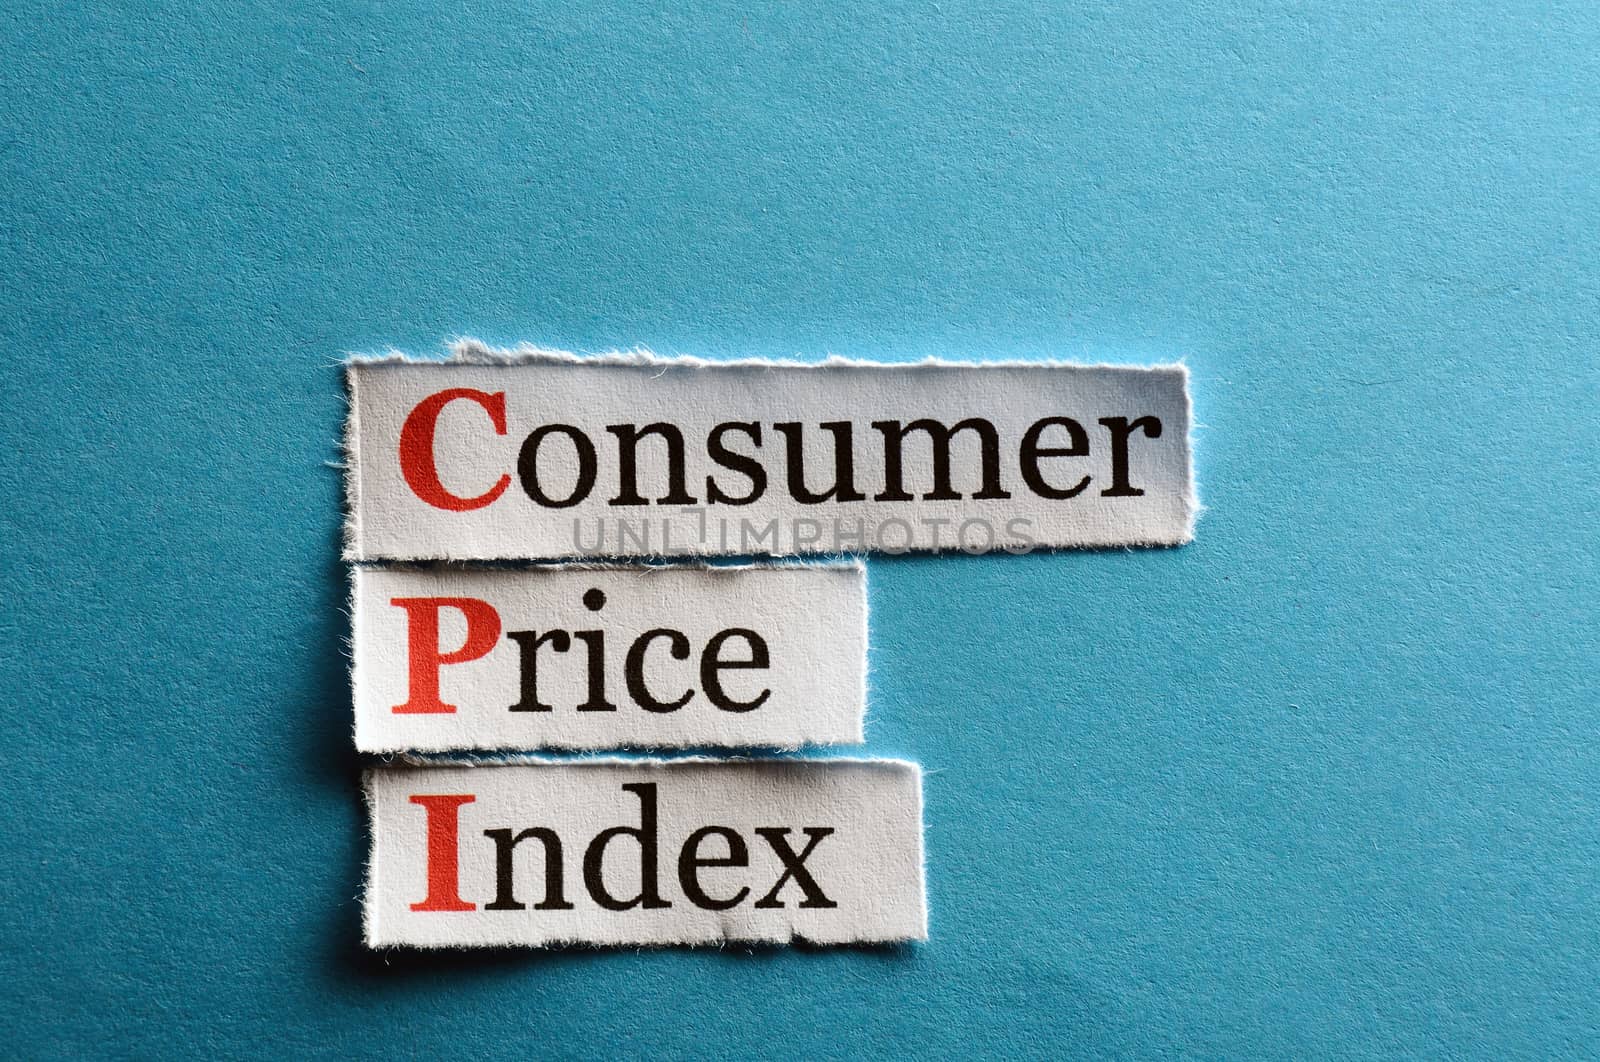 CPI - Consumer Price Index on blue paper